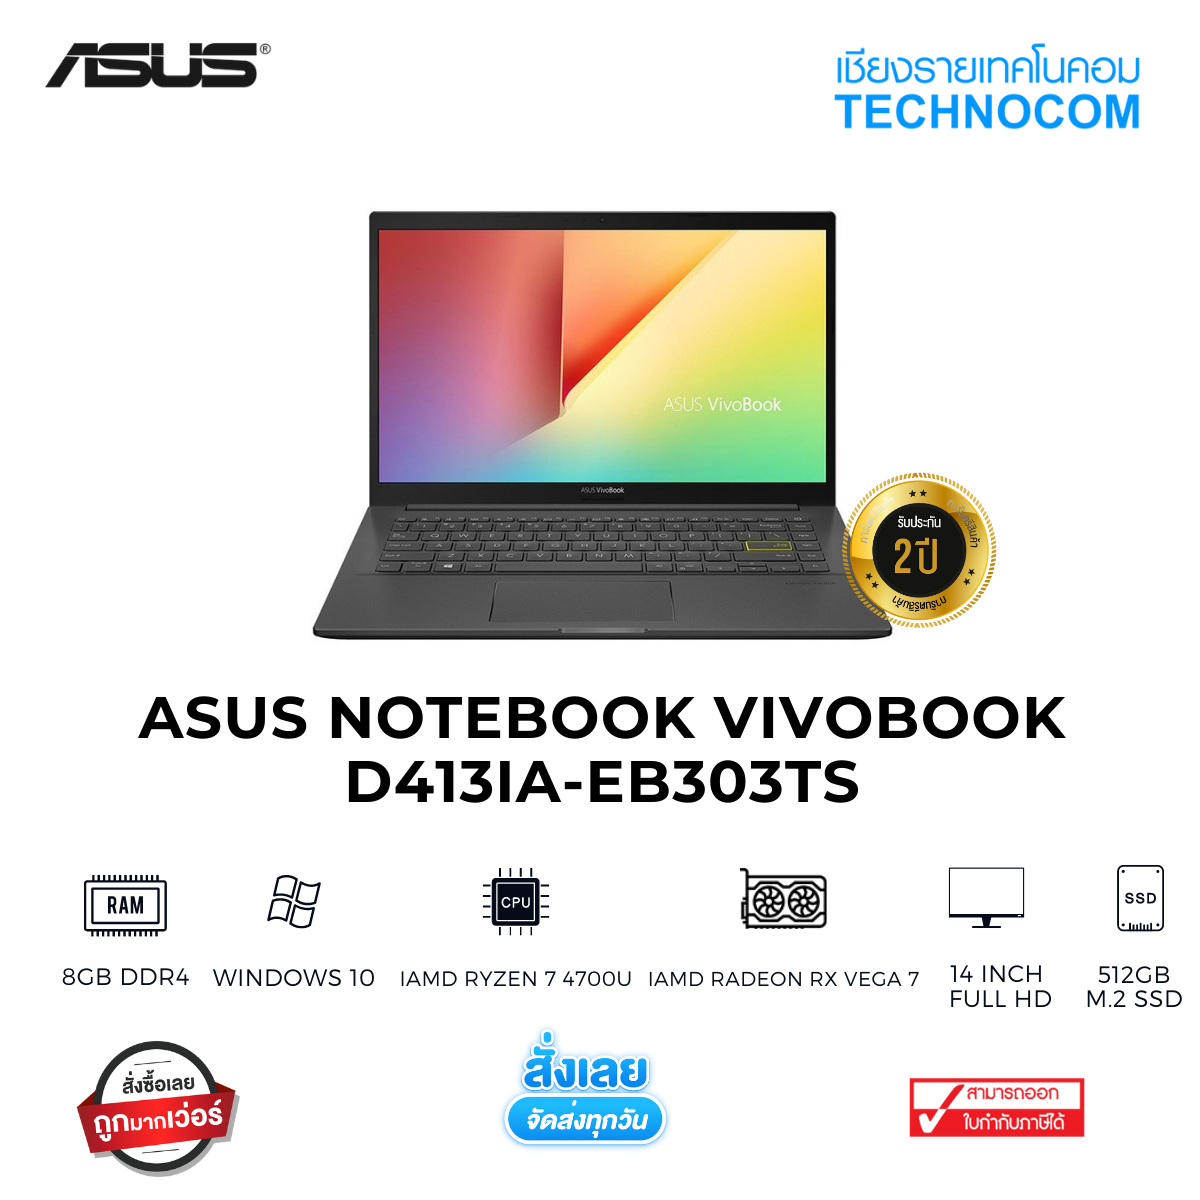 Asus Notebook VivoBook D413IA-EB303TS